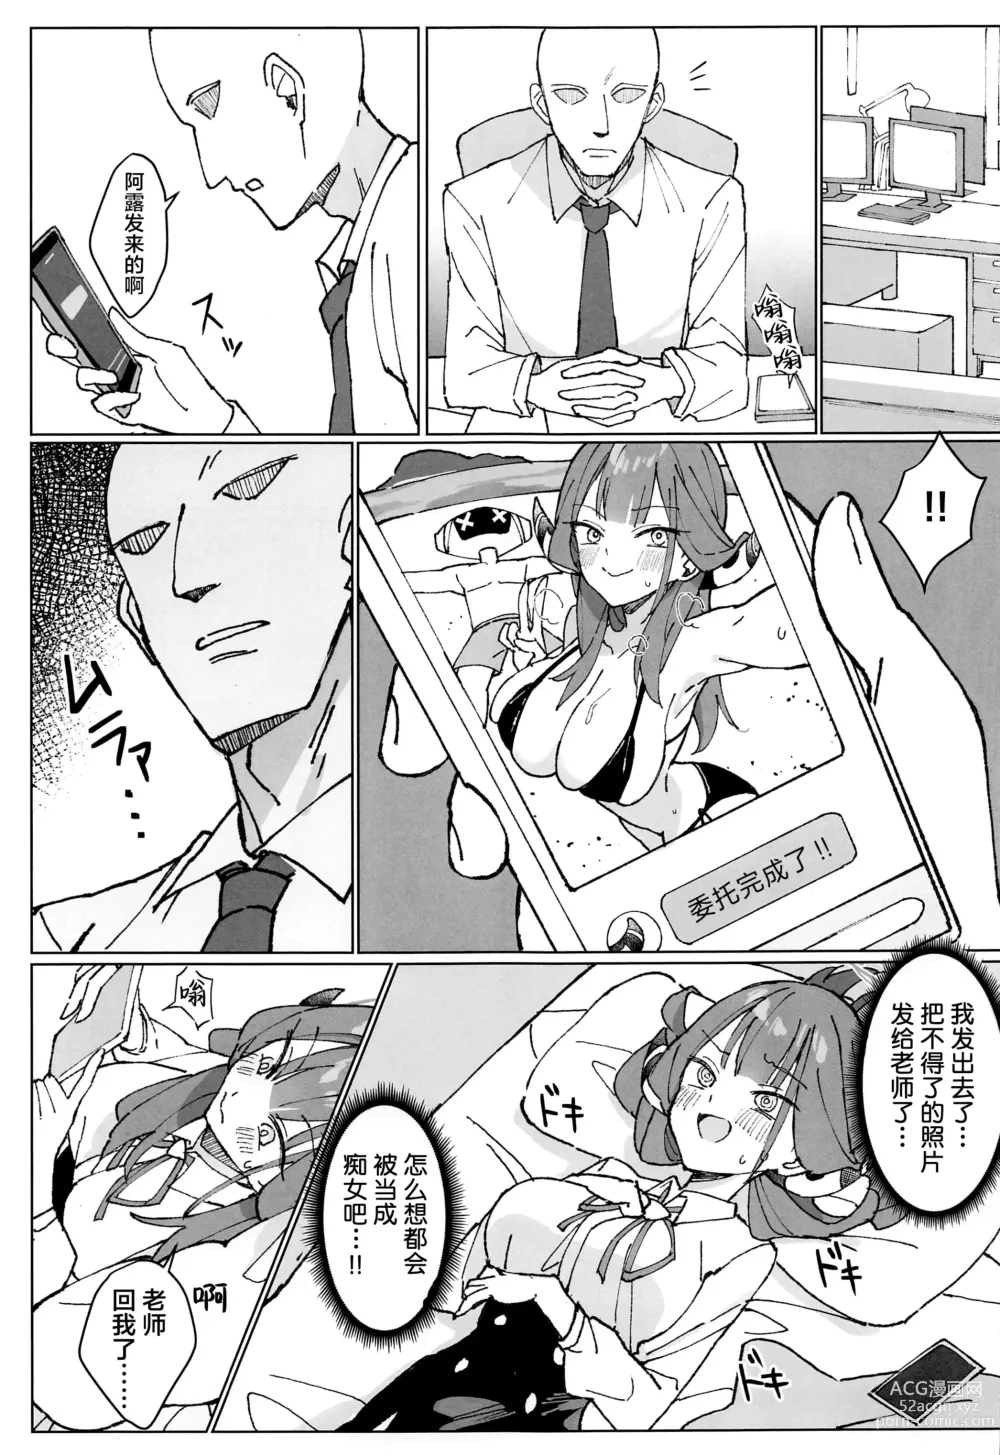 Page 5 of doujinshi Rikuhachima Satsuei Nisshi